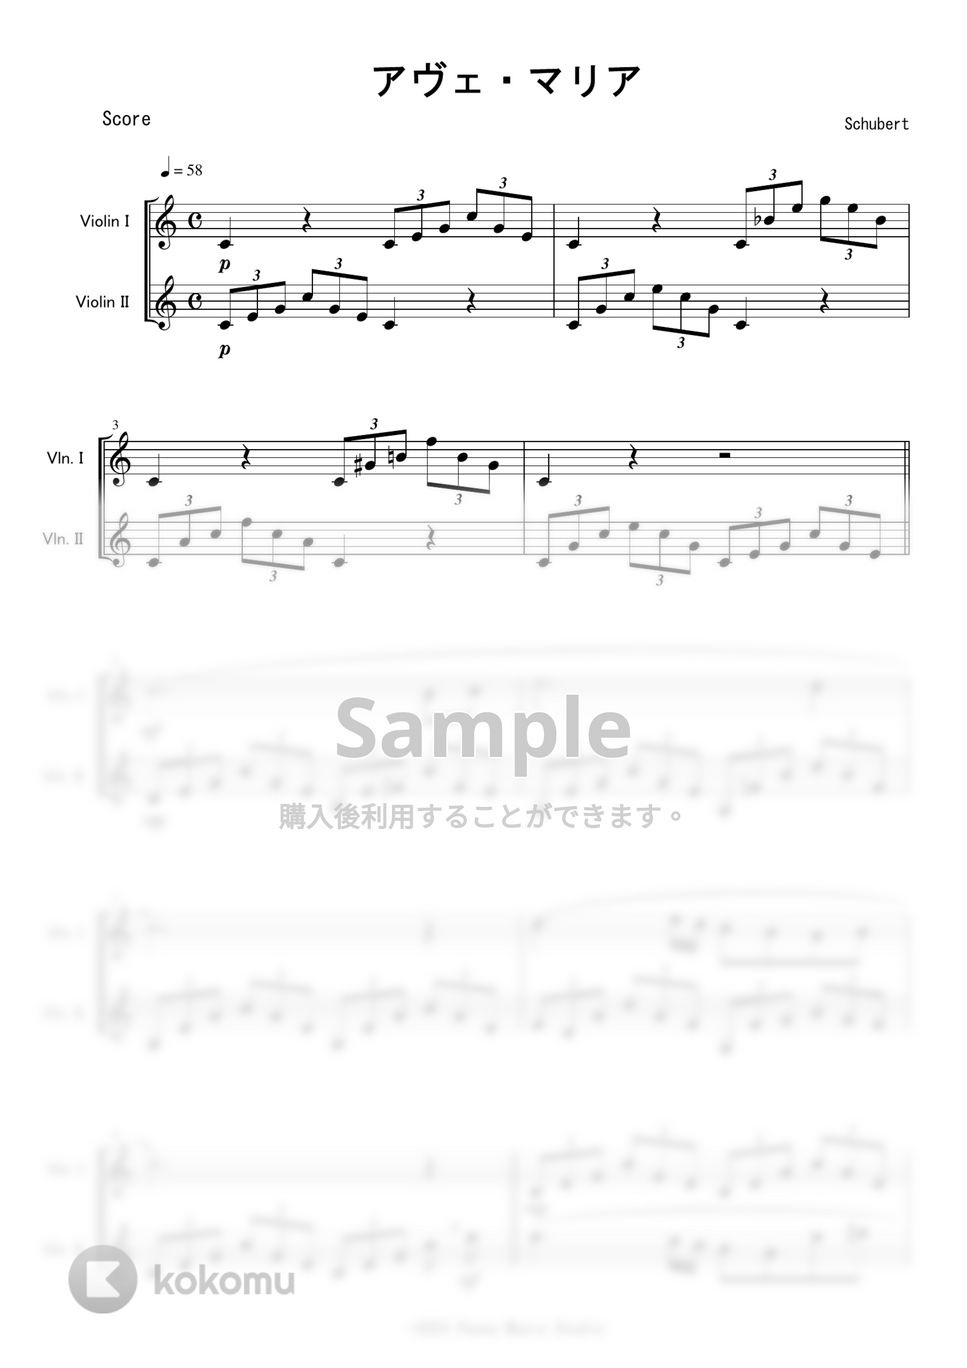 シューベルト - アヴェ・マリア (ヴァイオリン二重奏) by Peony